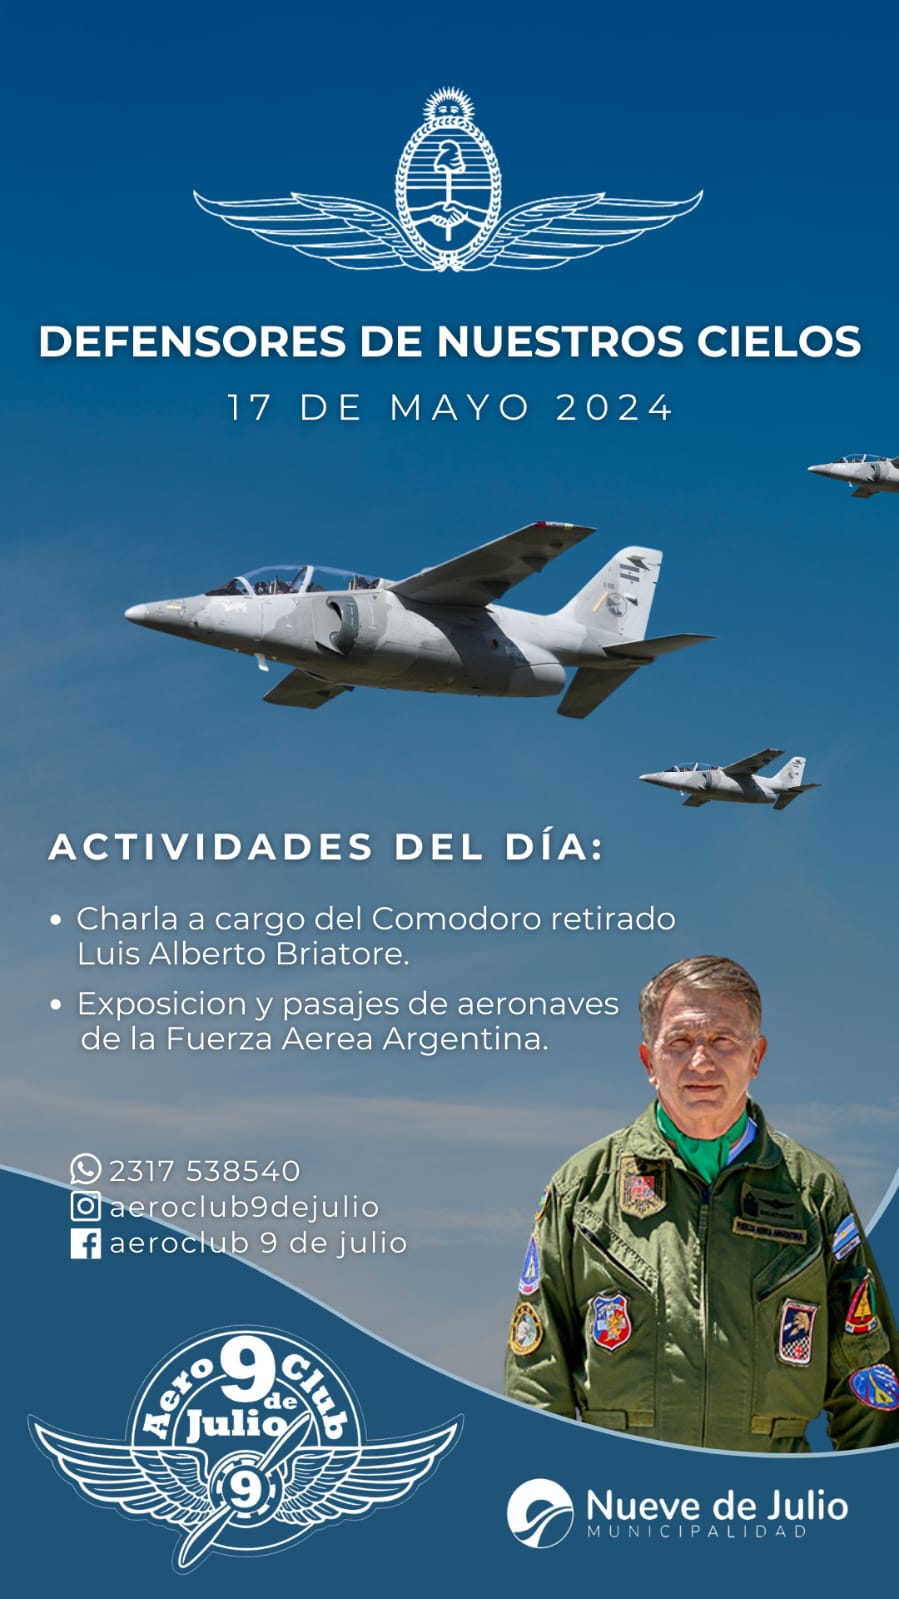 El Aero Club 9 de Julio prepara una jornada con exposición de aviones de la Fuerza Aérea Argentina y una charla